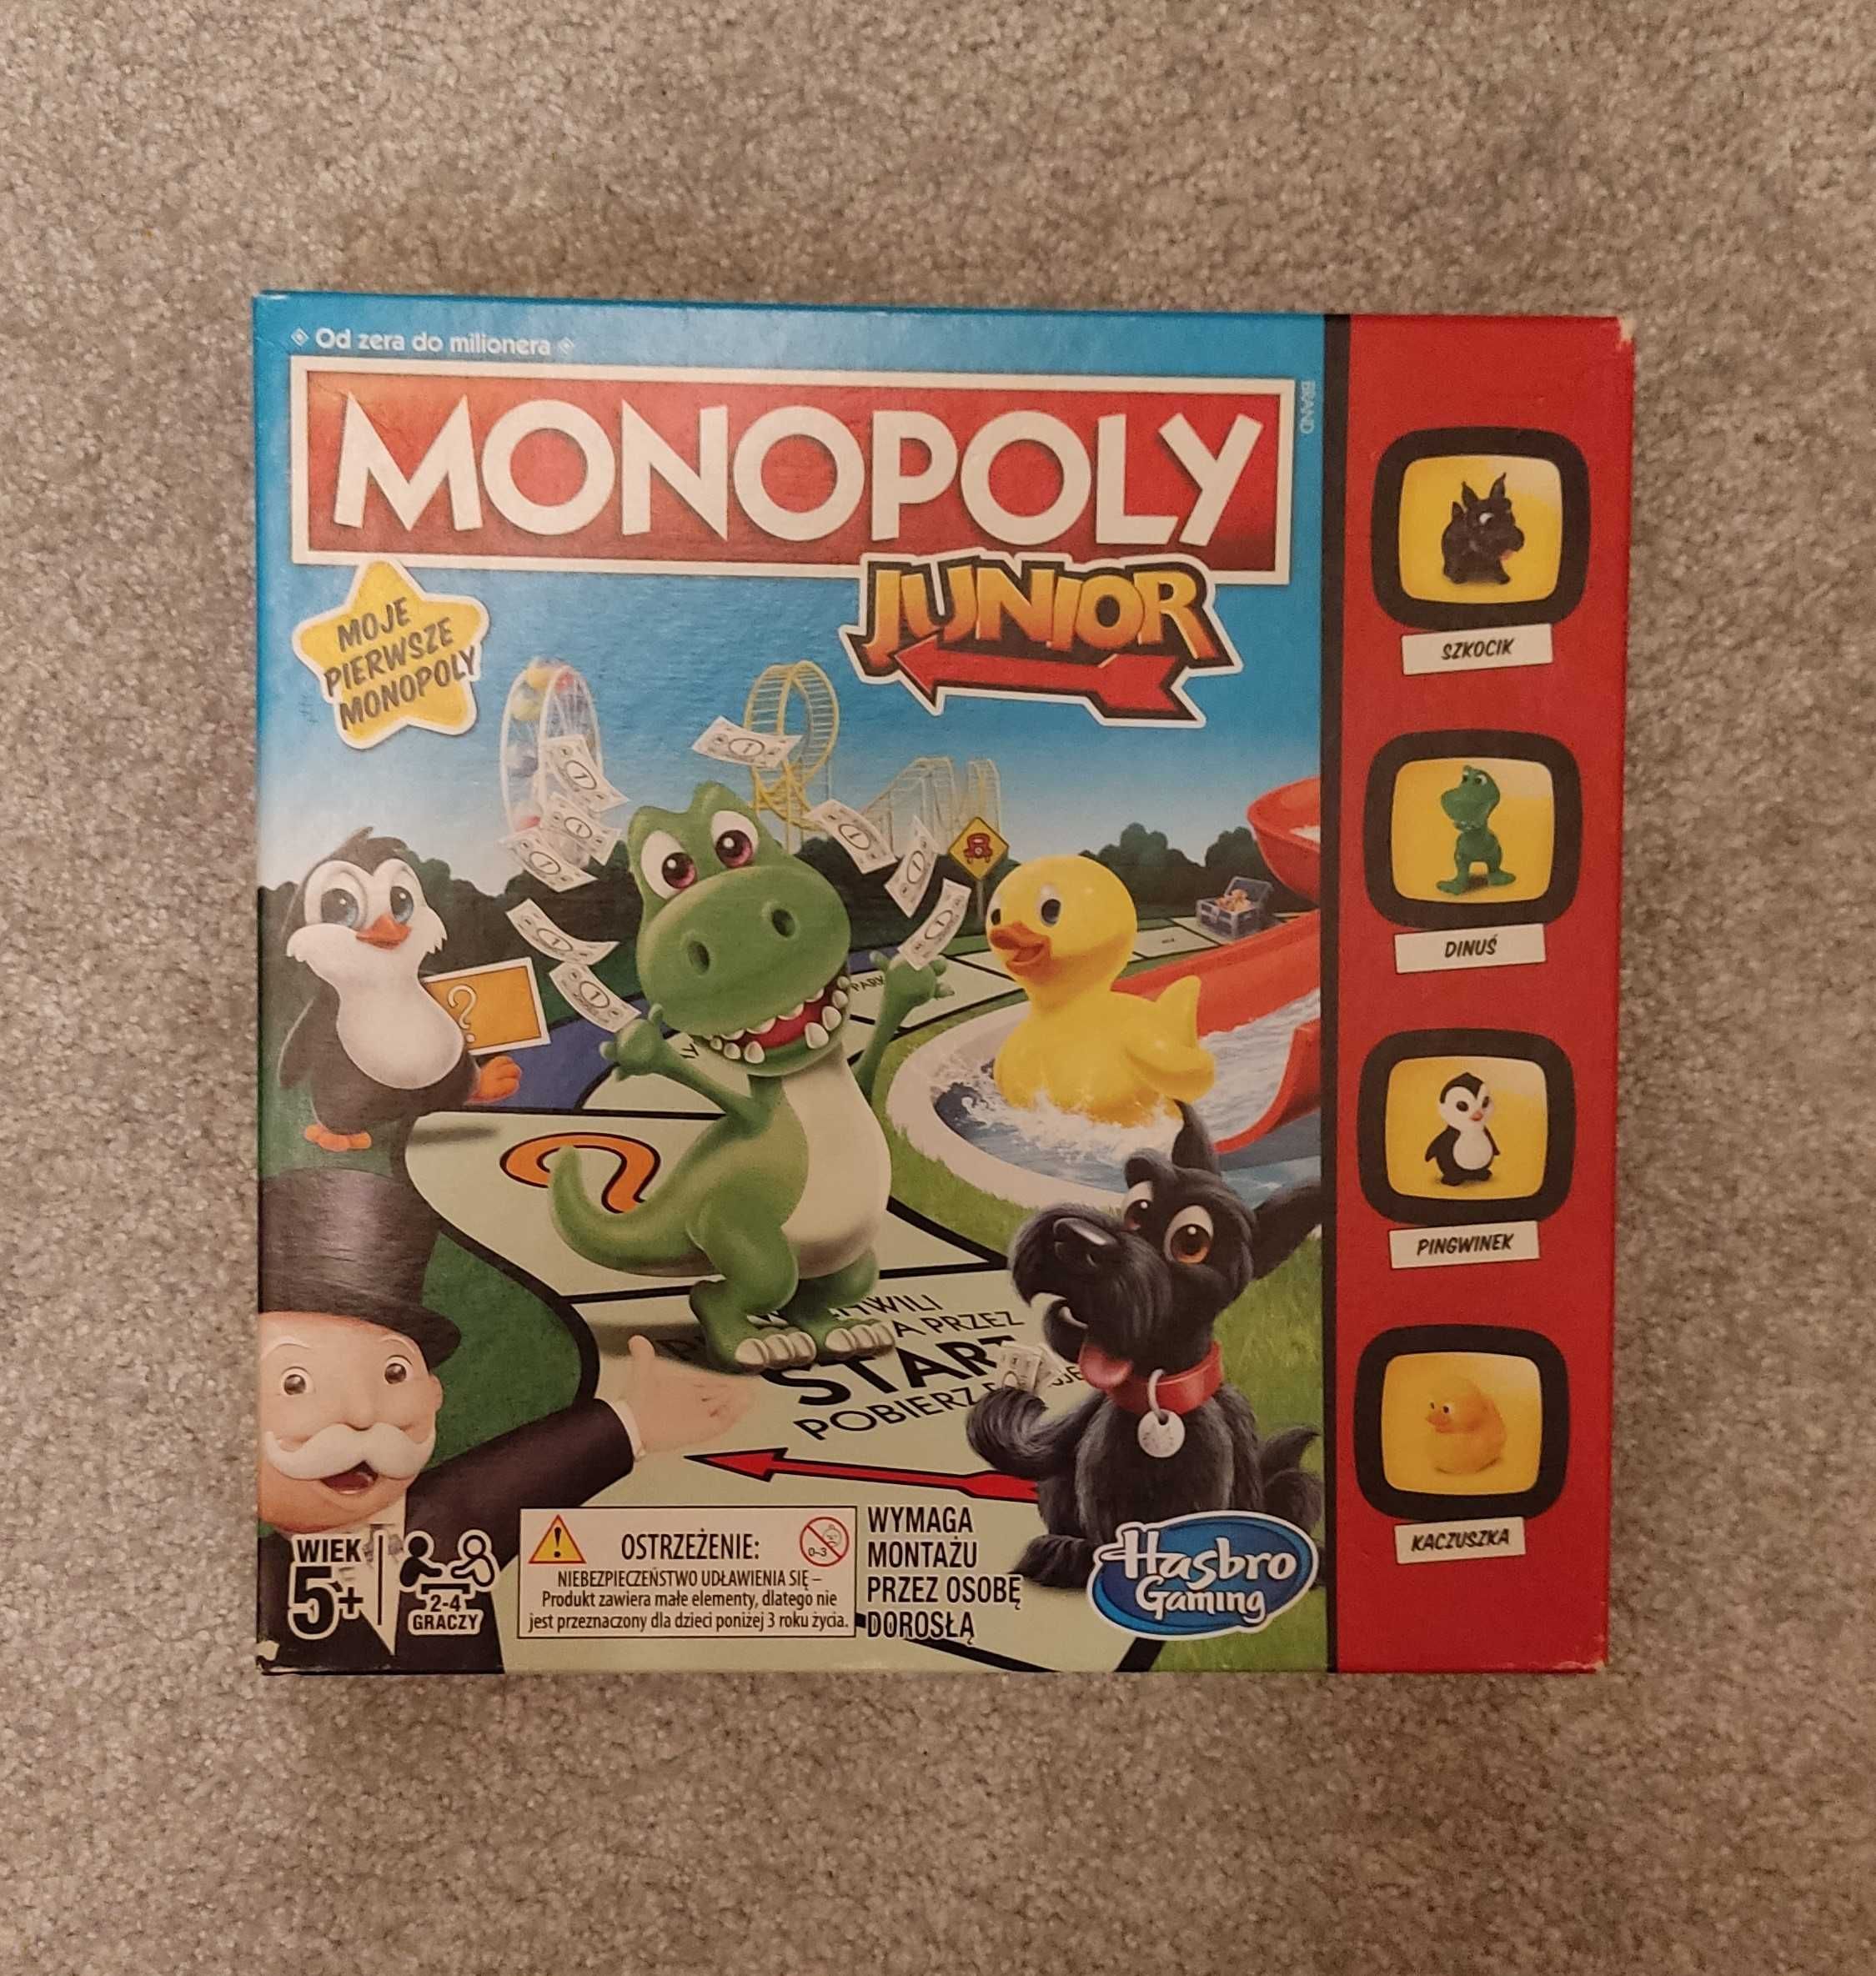 Monopoly Junior - Moje pierwsze monopoly